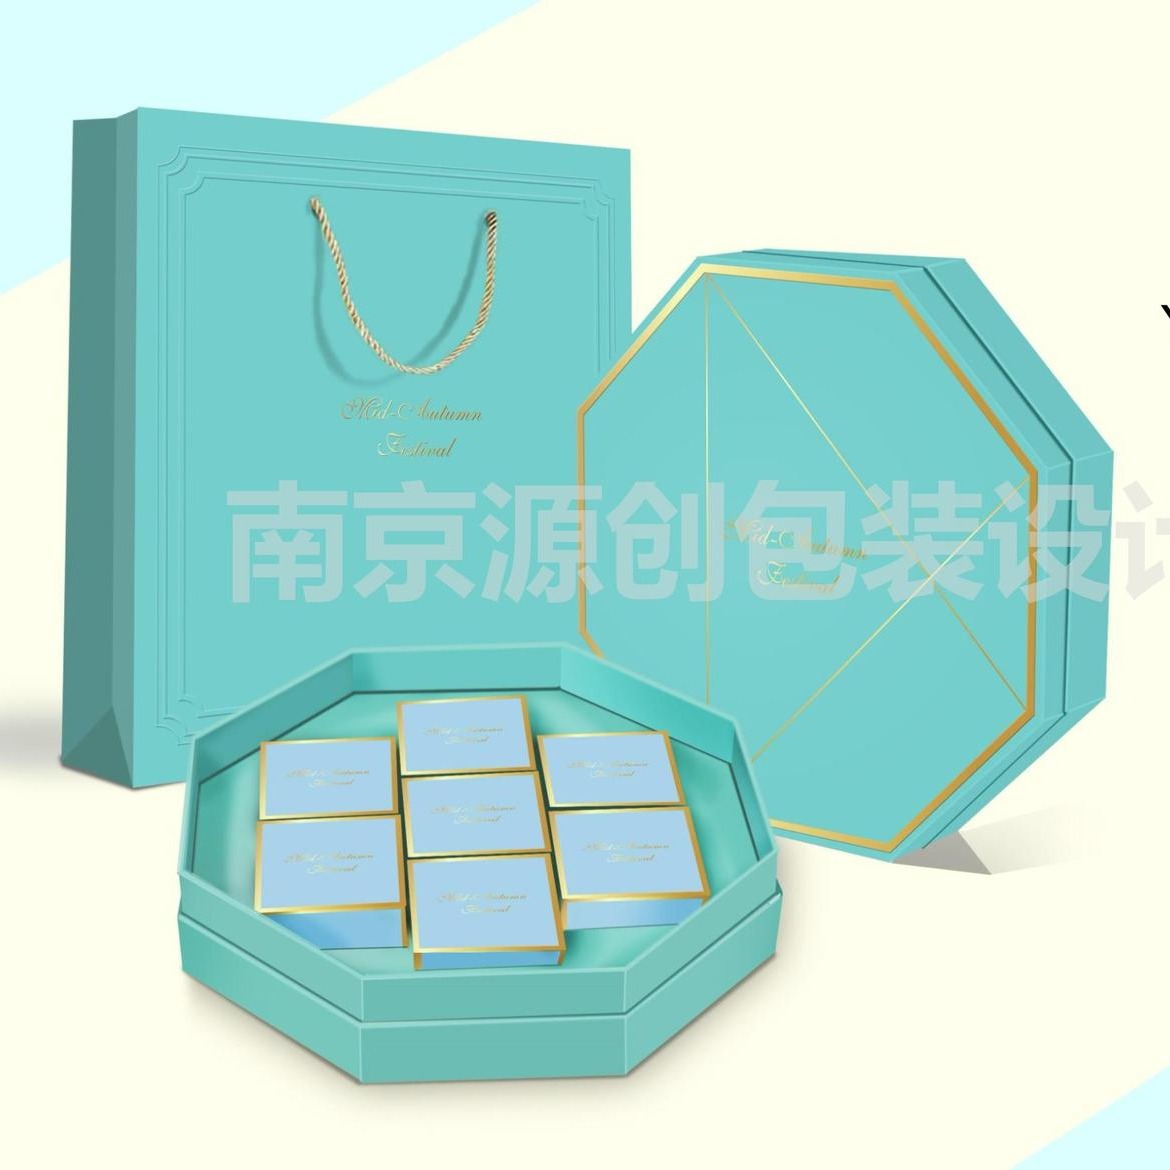 2021月饼包装盒定制 月饼盒设计 月饼礼盒生产 南京包装礼盒定制